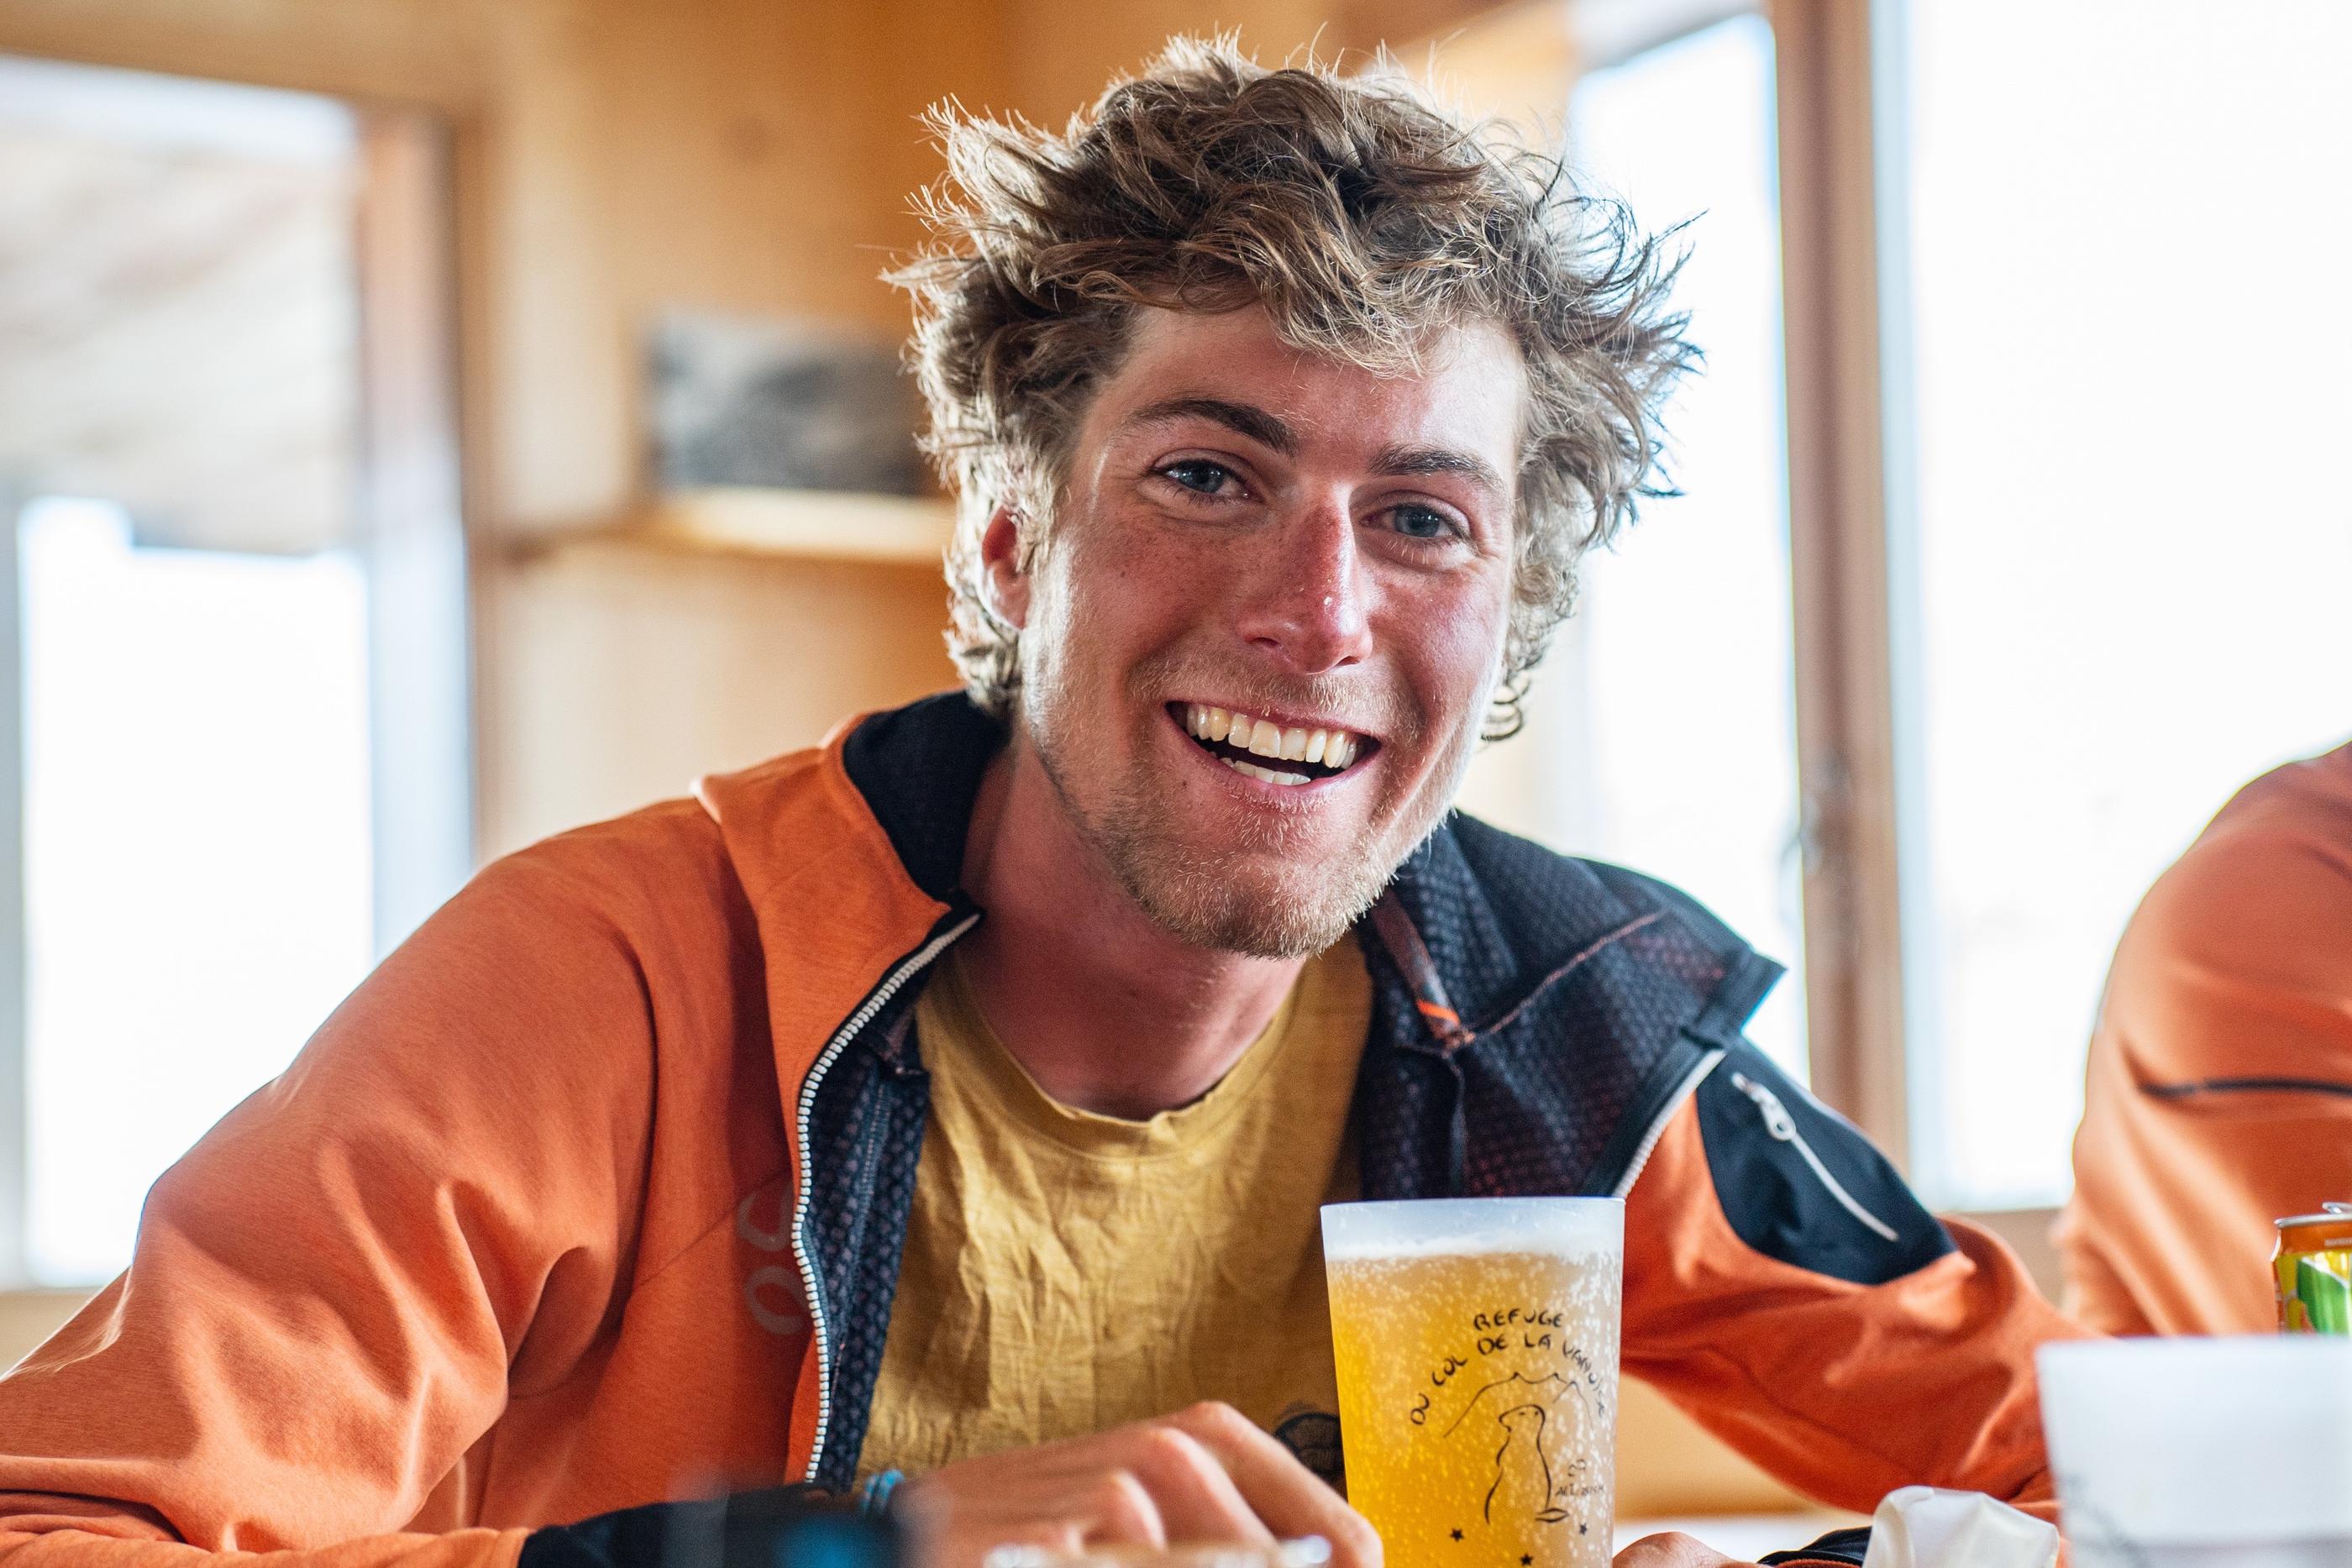 En avril dernier, Esteban Olivero souriait à la vie devant une bière au Refuge de la Vanoise après une grande journée de ski alpinisme. Il a perdu la vie lors d'une chute sur un glacier du massif des Écrins. LP/Thomas Pueyo